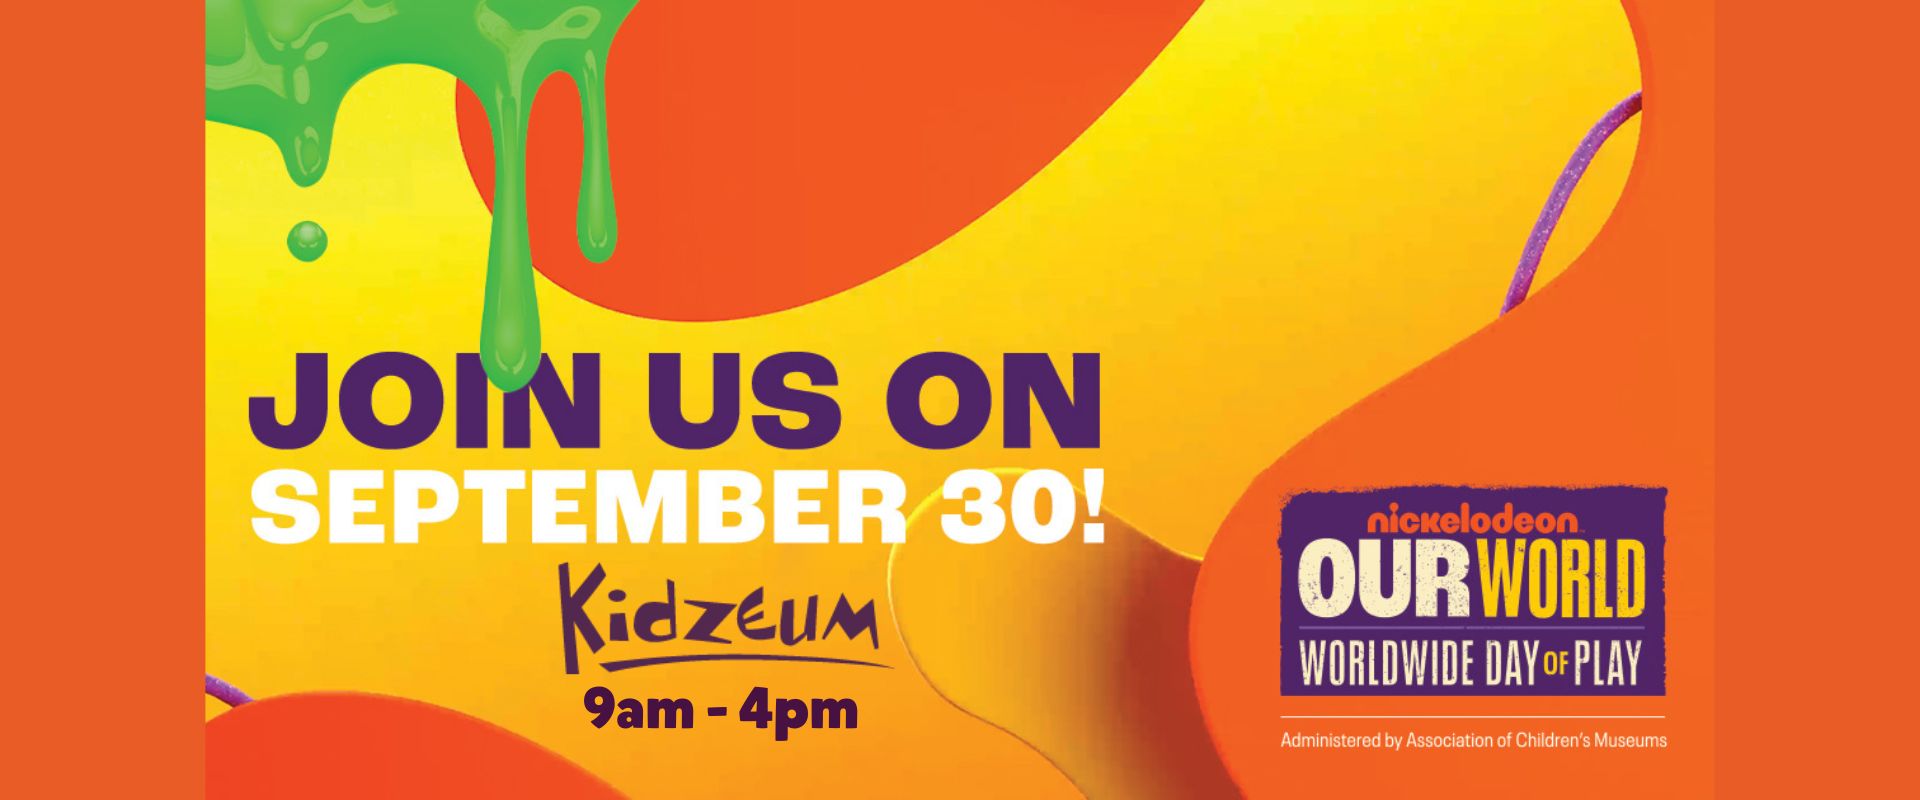 Nickelodeon's Worldwide Day of Play Comes to Kidzeum!